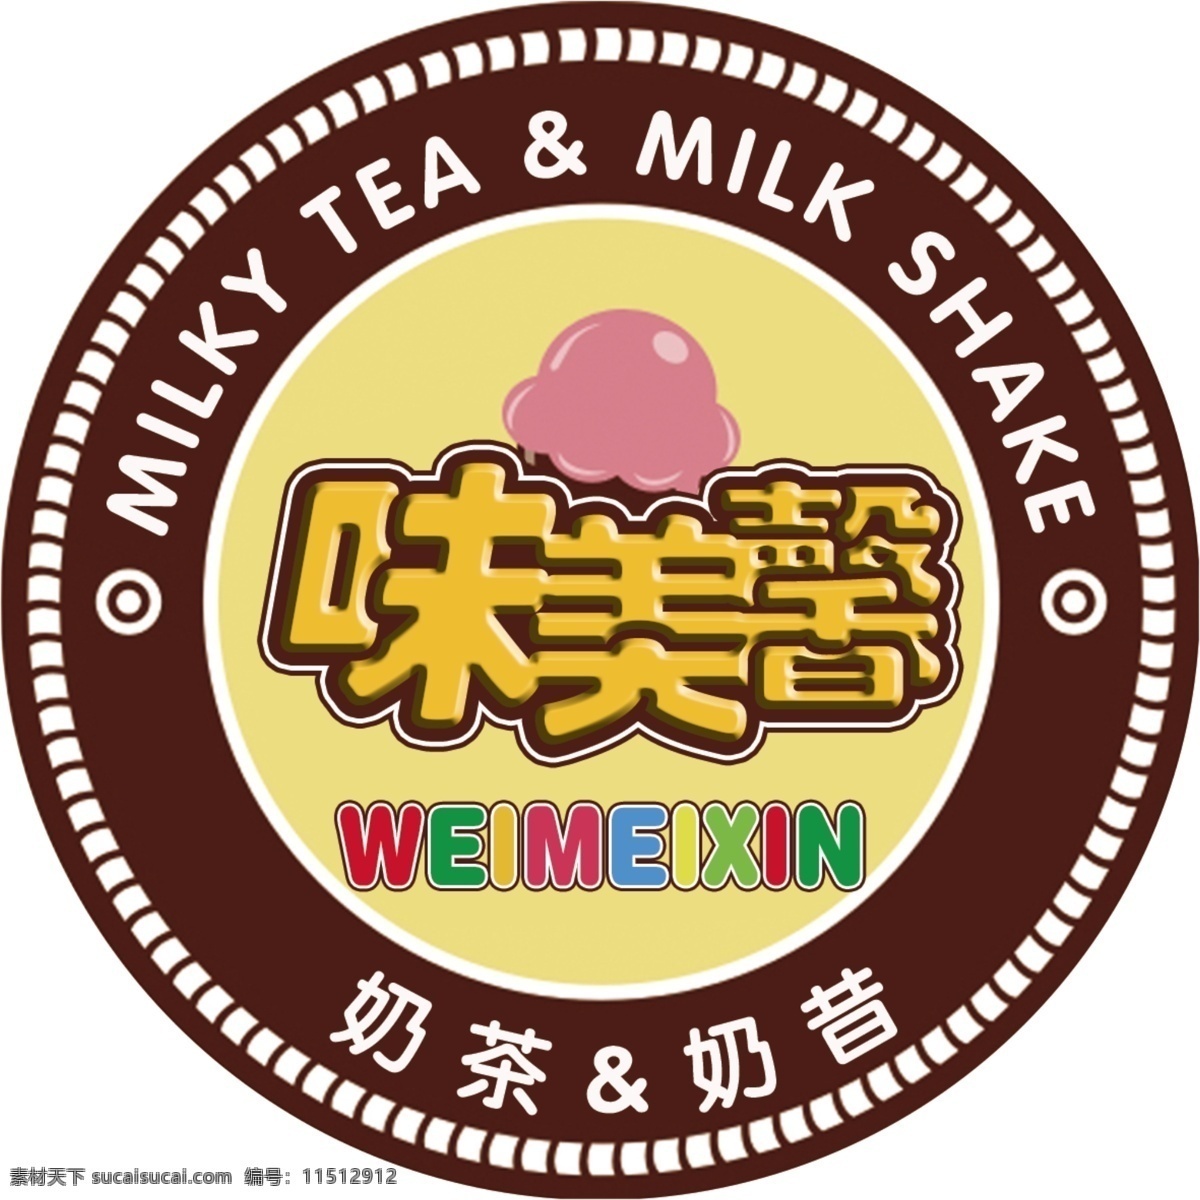 味美 馨 奶茶 标志 奶昔 味美馨 mliky tea milk shake